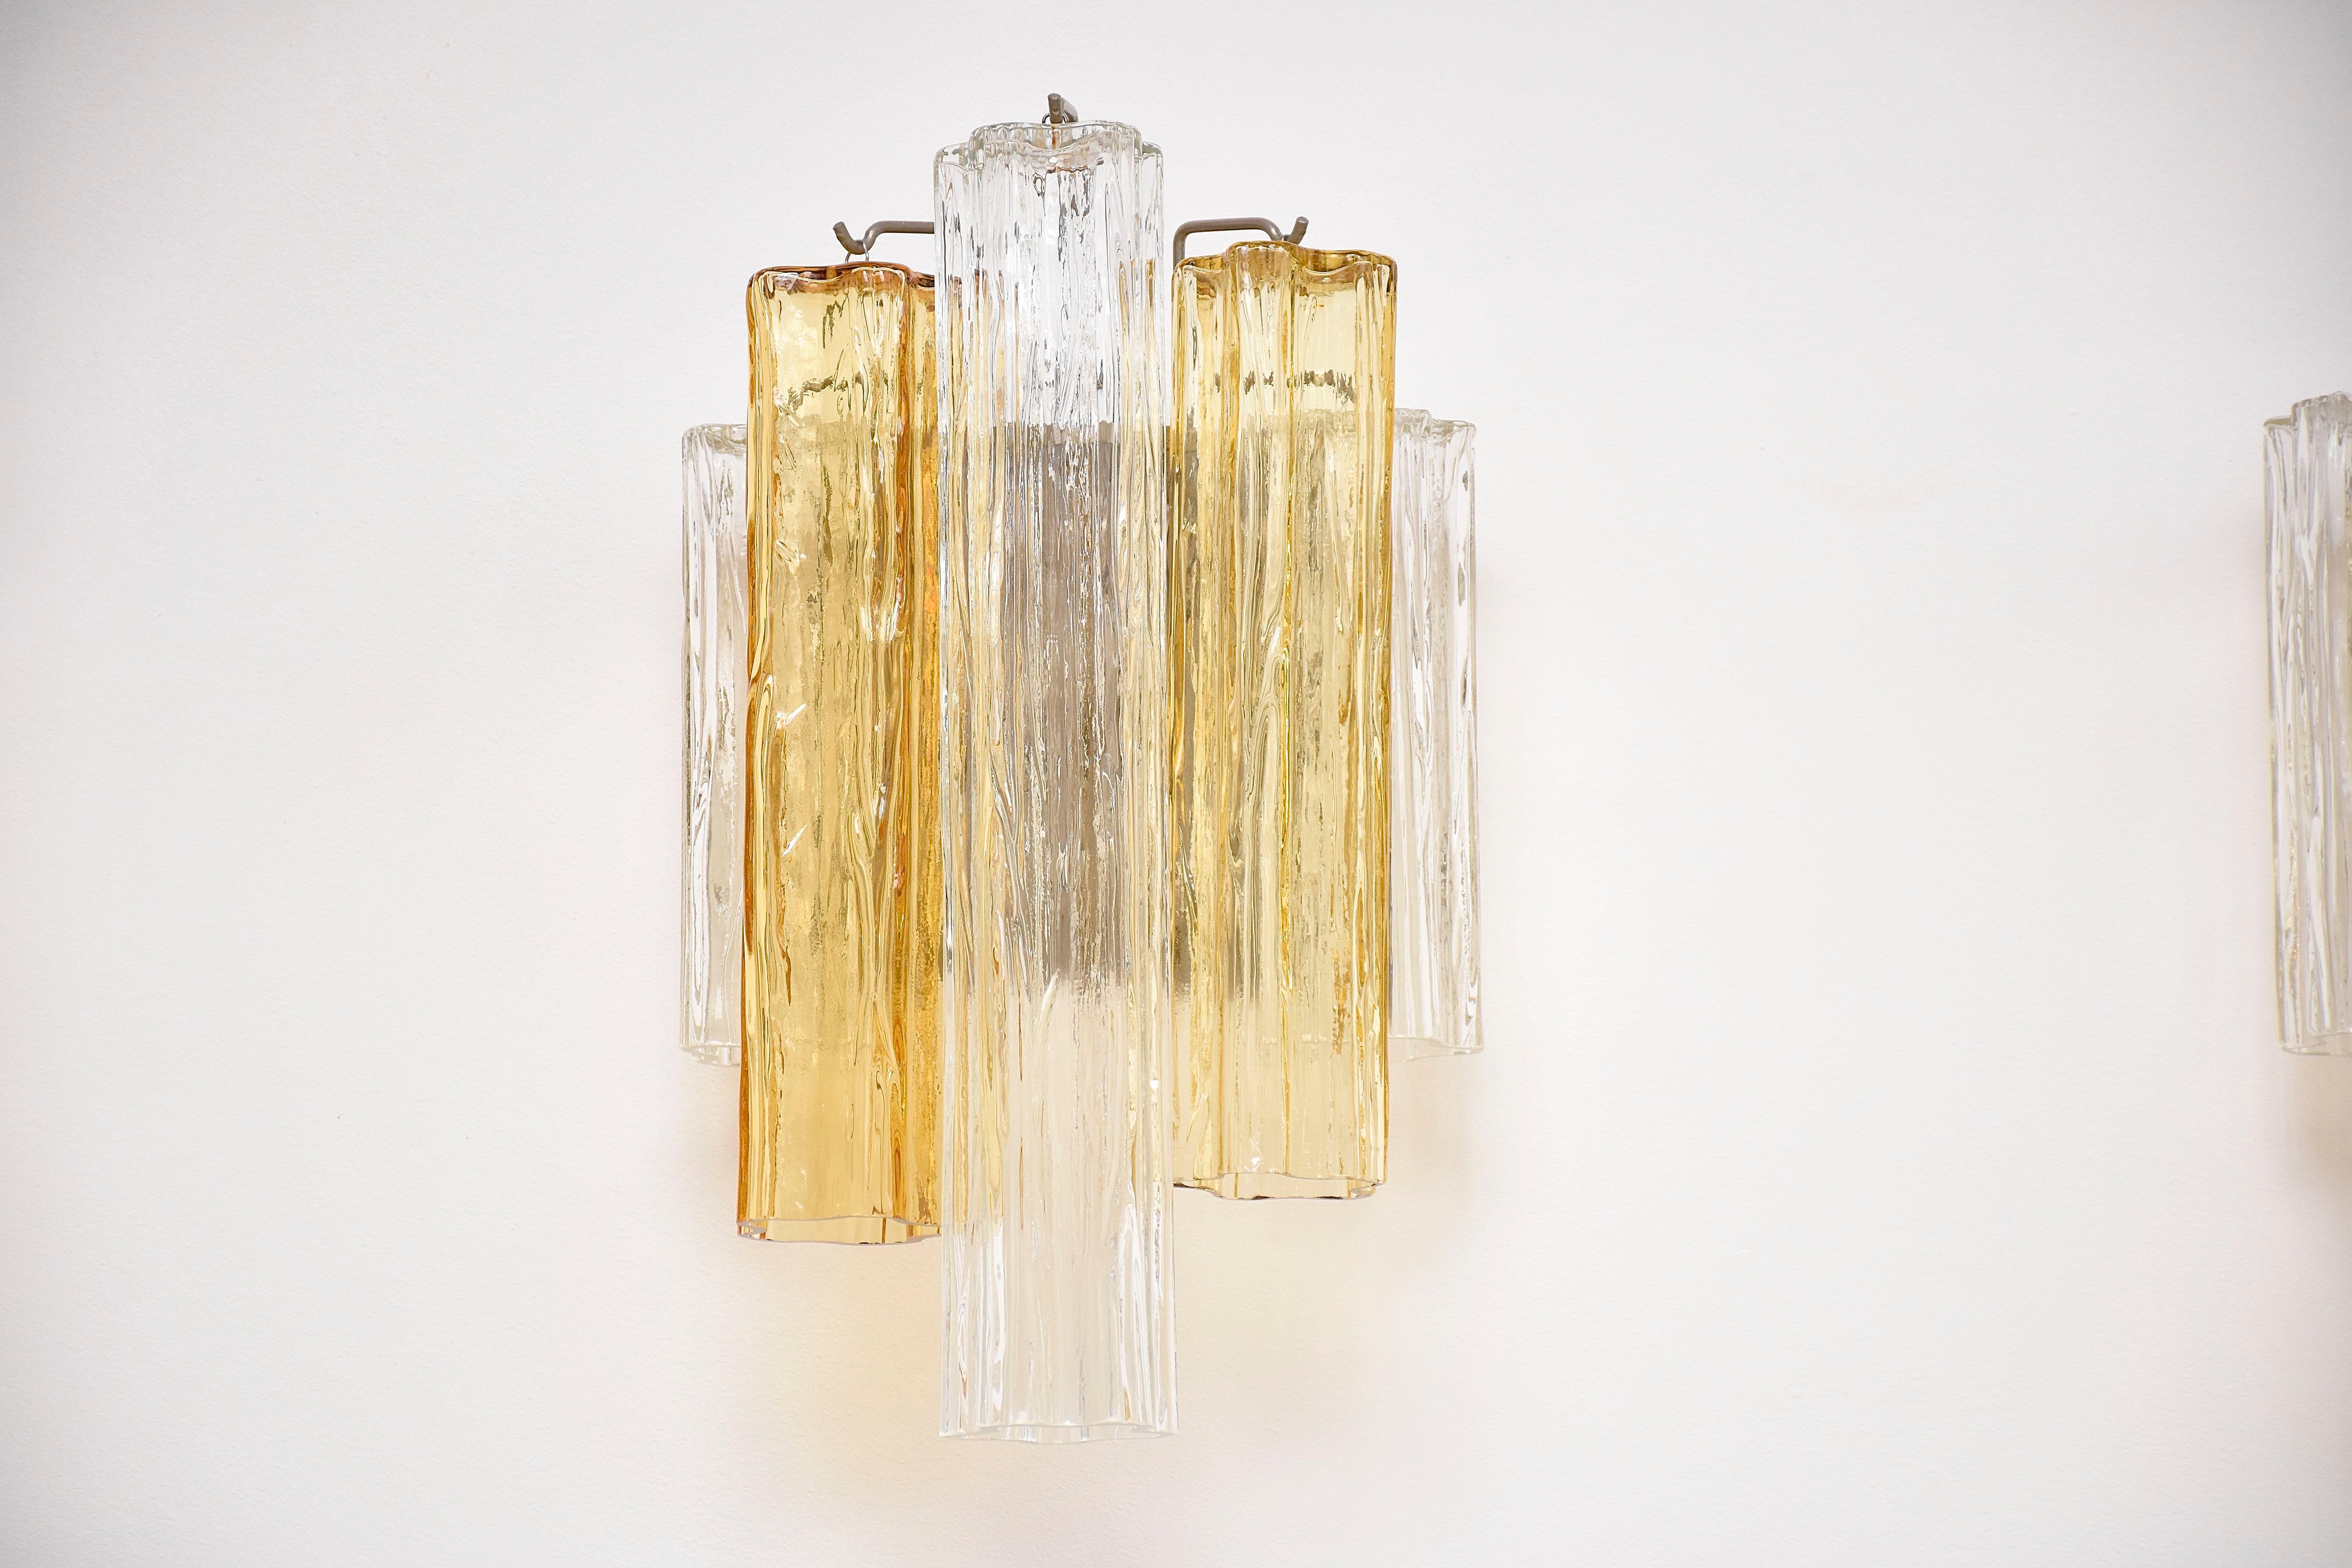 Ein elegantes und originelles Set von Murano Wandapplikationen.
Jede mit 3 Lichtern im Inneren.
Schöne Komposition aus transparenten und zartgelben Murano-Stücken 'Tronchi'.

4 Stück verfügbar - wird als 2er-Set verkauft